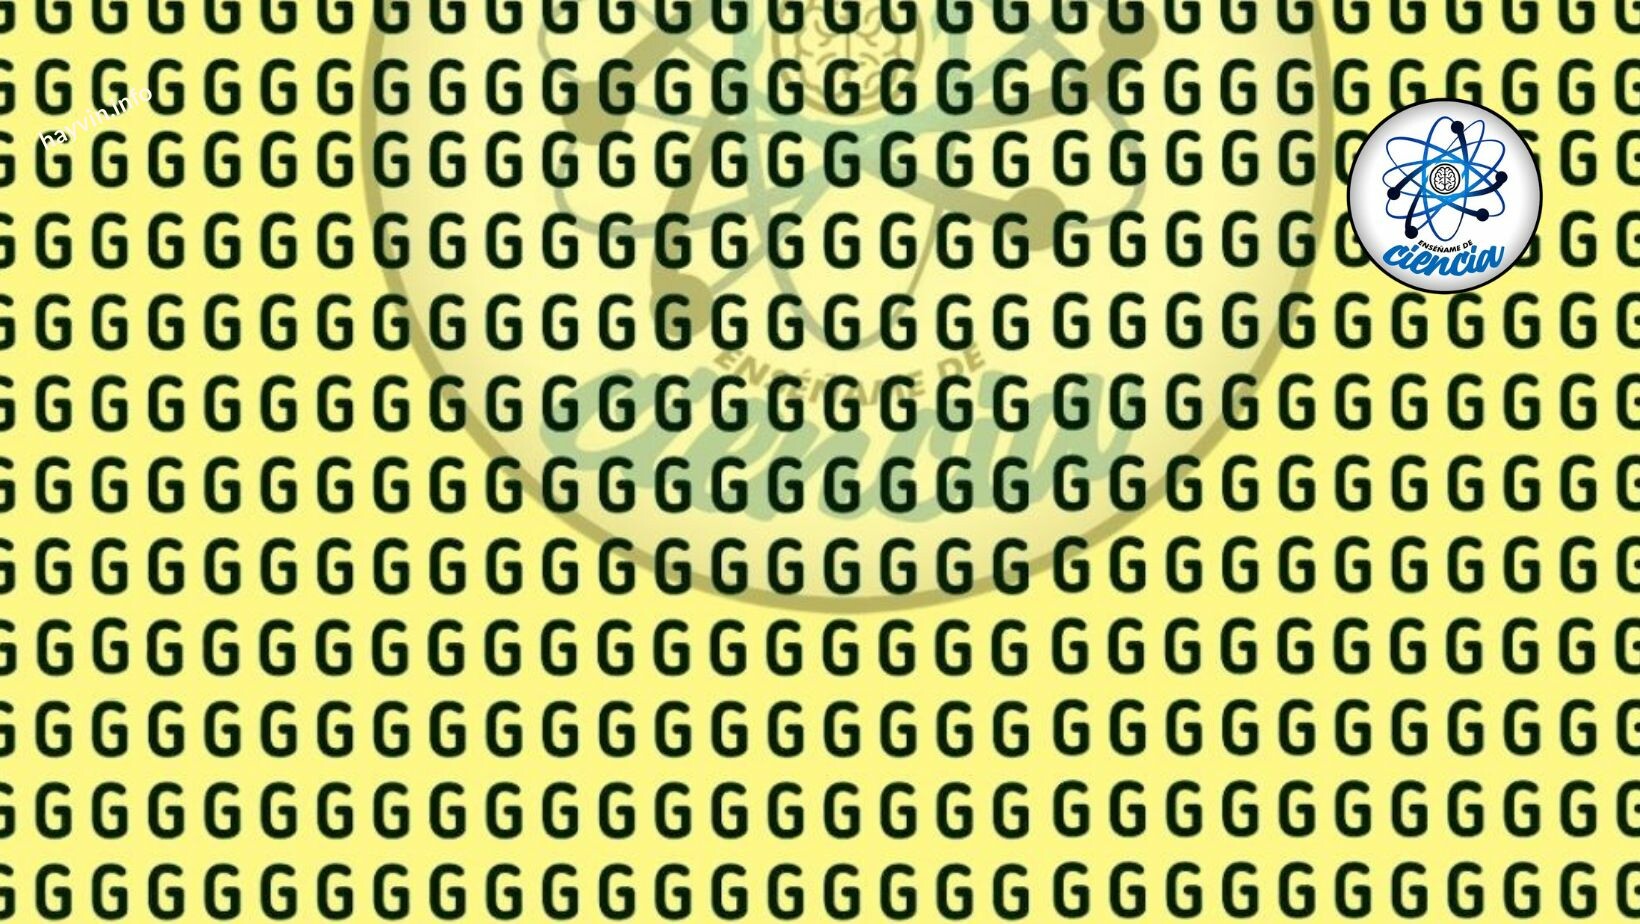 Keresse meg a „C” betűt a „G” között a felkapott vizuális rejtvényben, 5 másodperc áll rendelkezésére